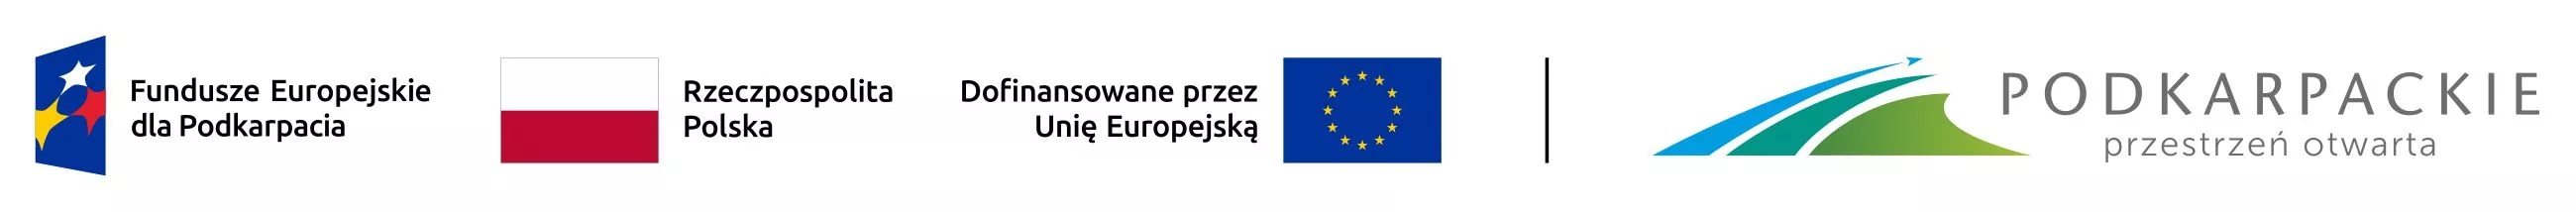 Logotypy funduszy unijnych